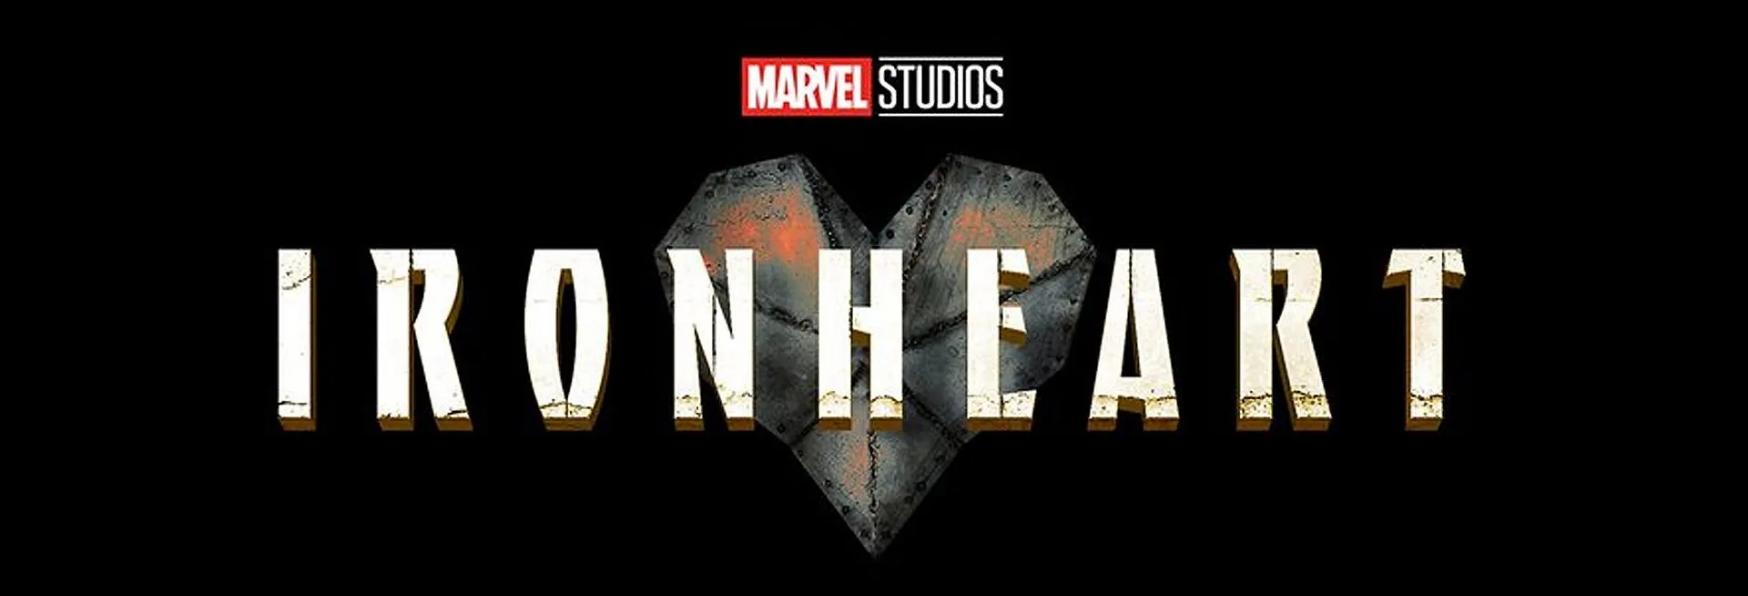 Ironheart: i Marvel Studios annunciano la Finestra di Uscita della nuova Serie TV